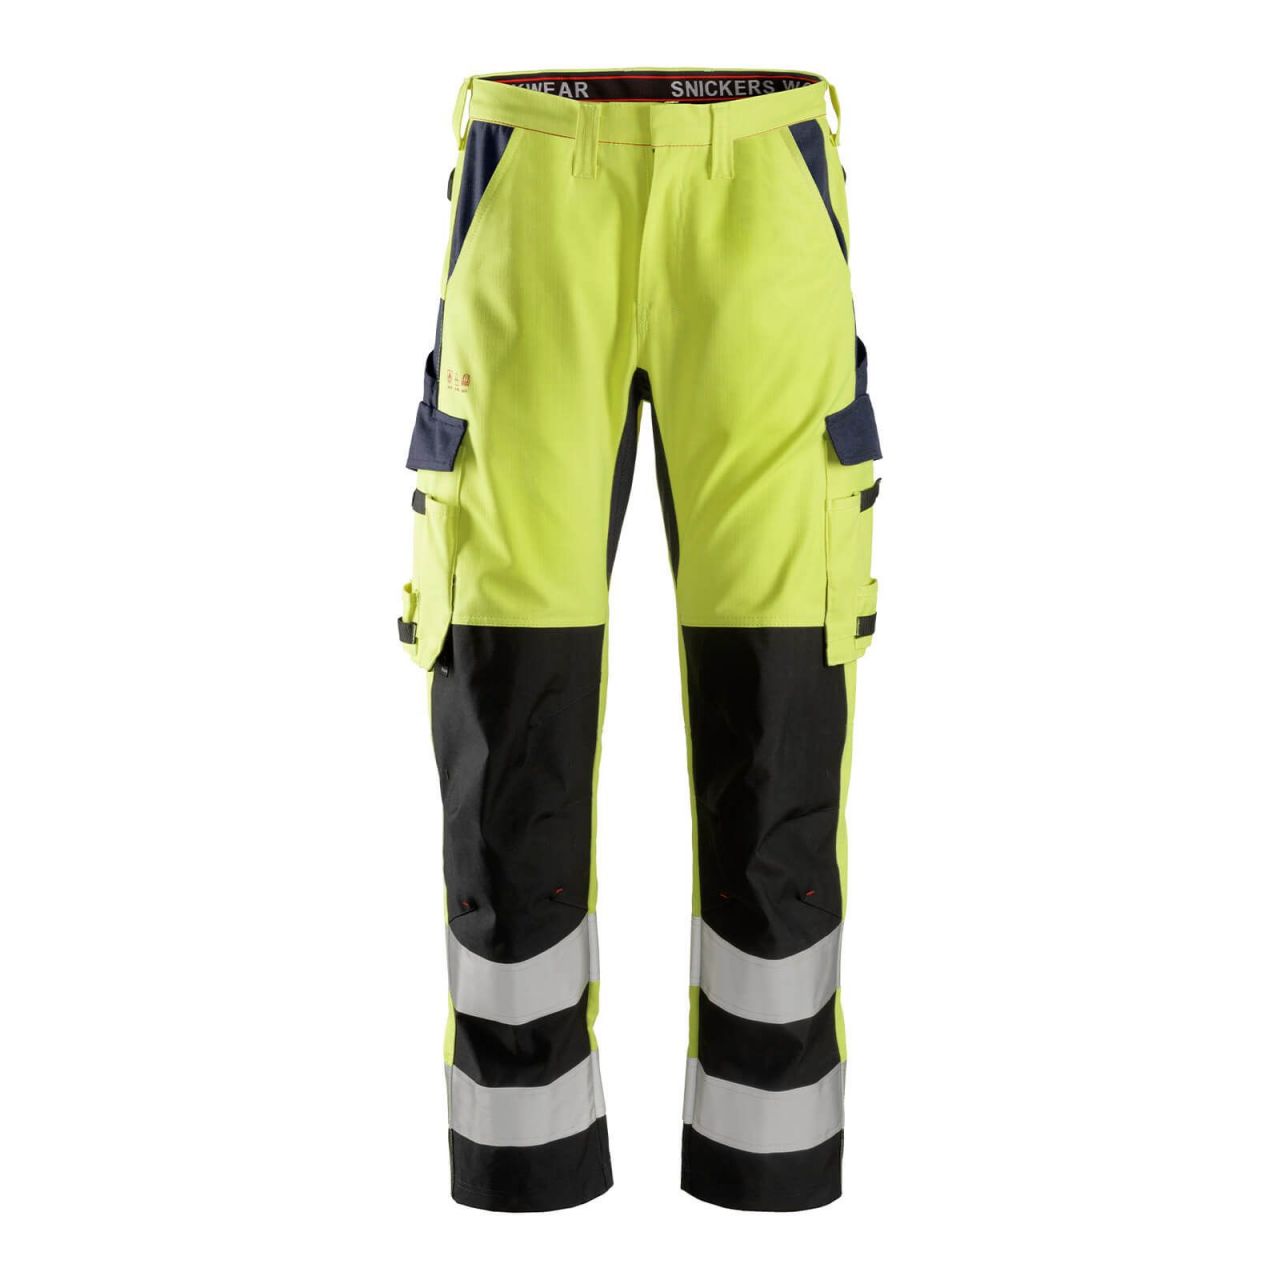 6364 Pantalones largos de trabajo de alta visibilidad clase 2 con espinilla reforzada ProtecWork amarillo-azul marino talla 112